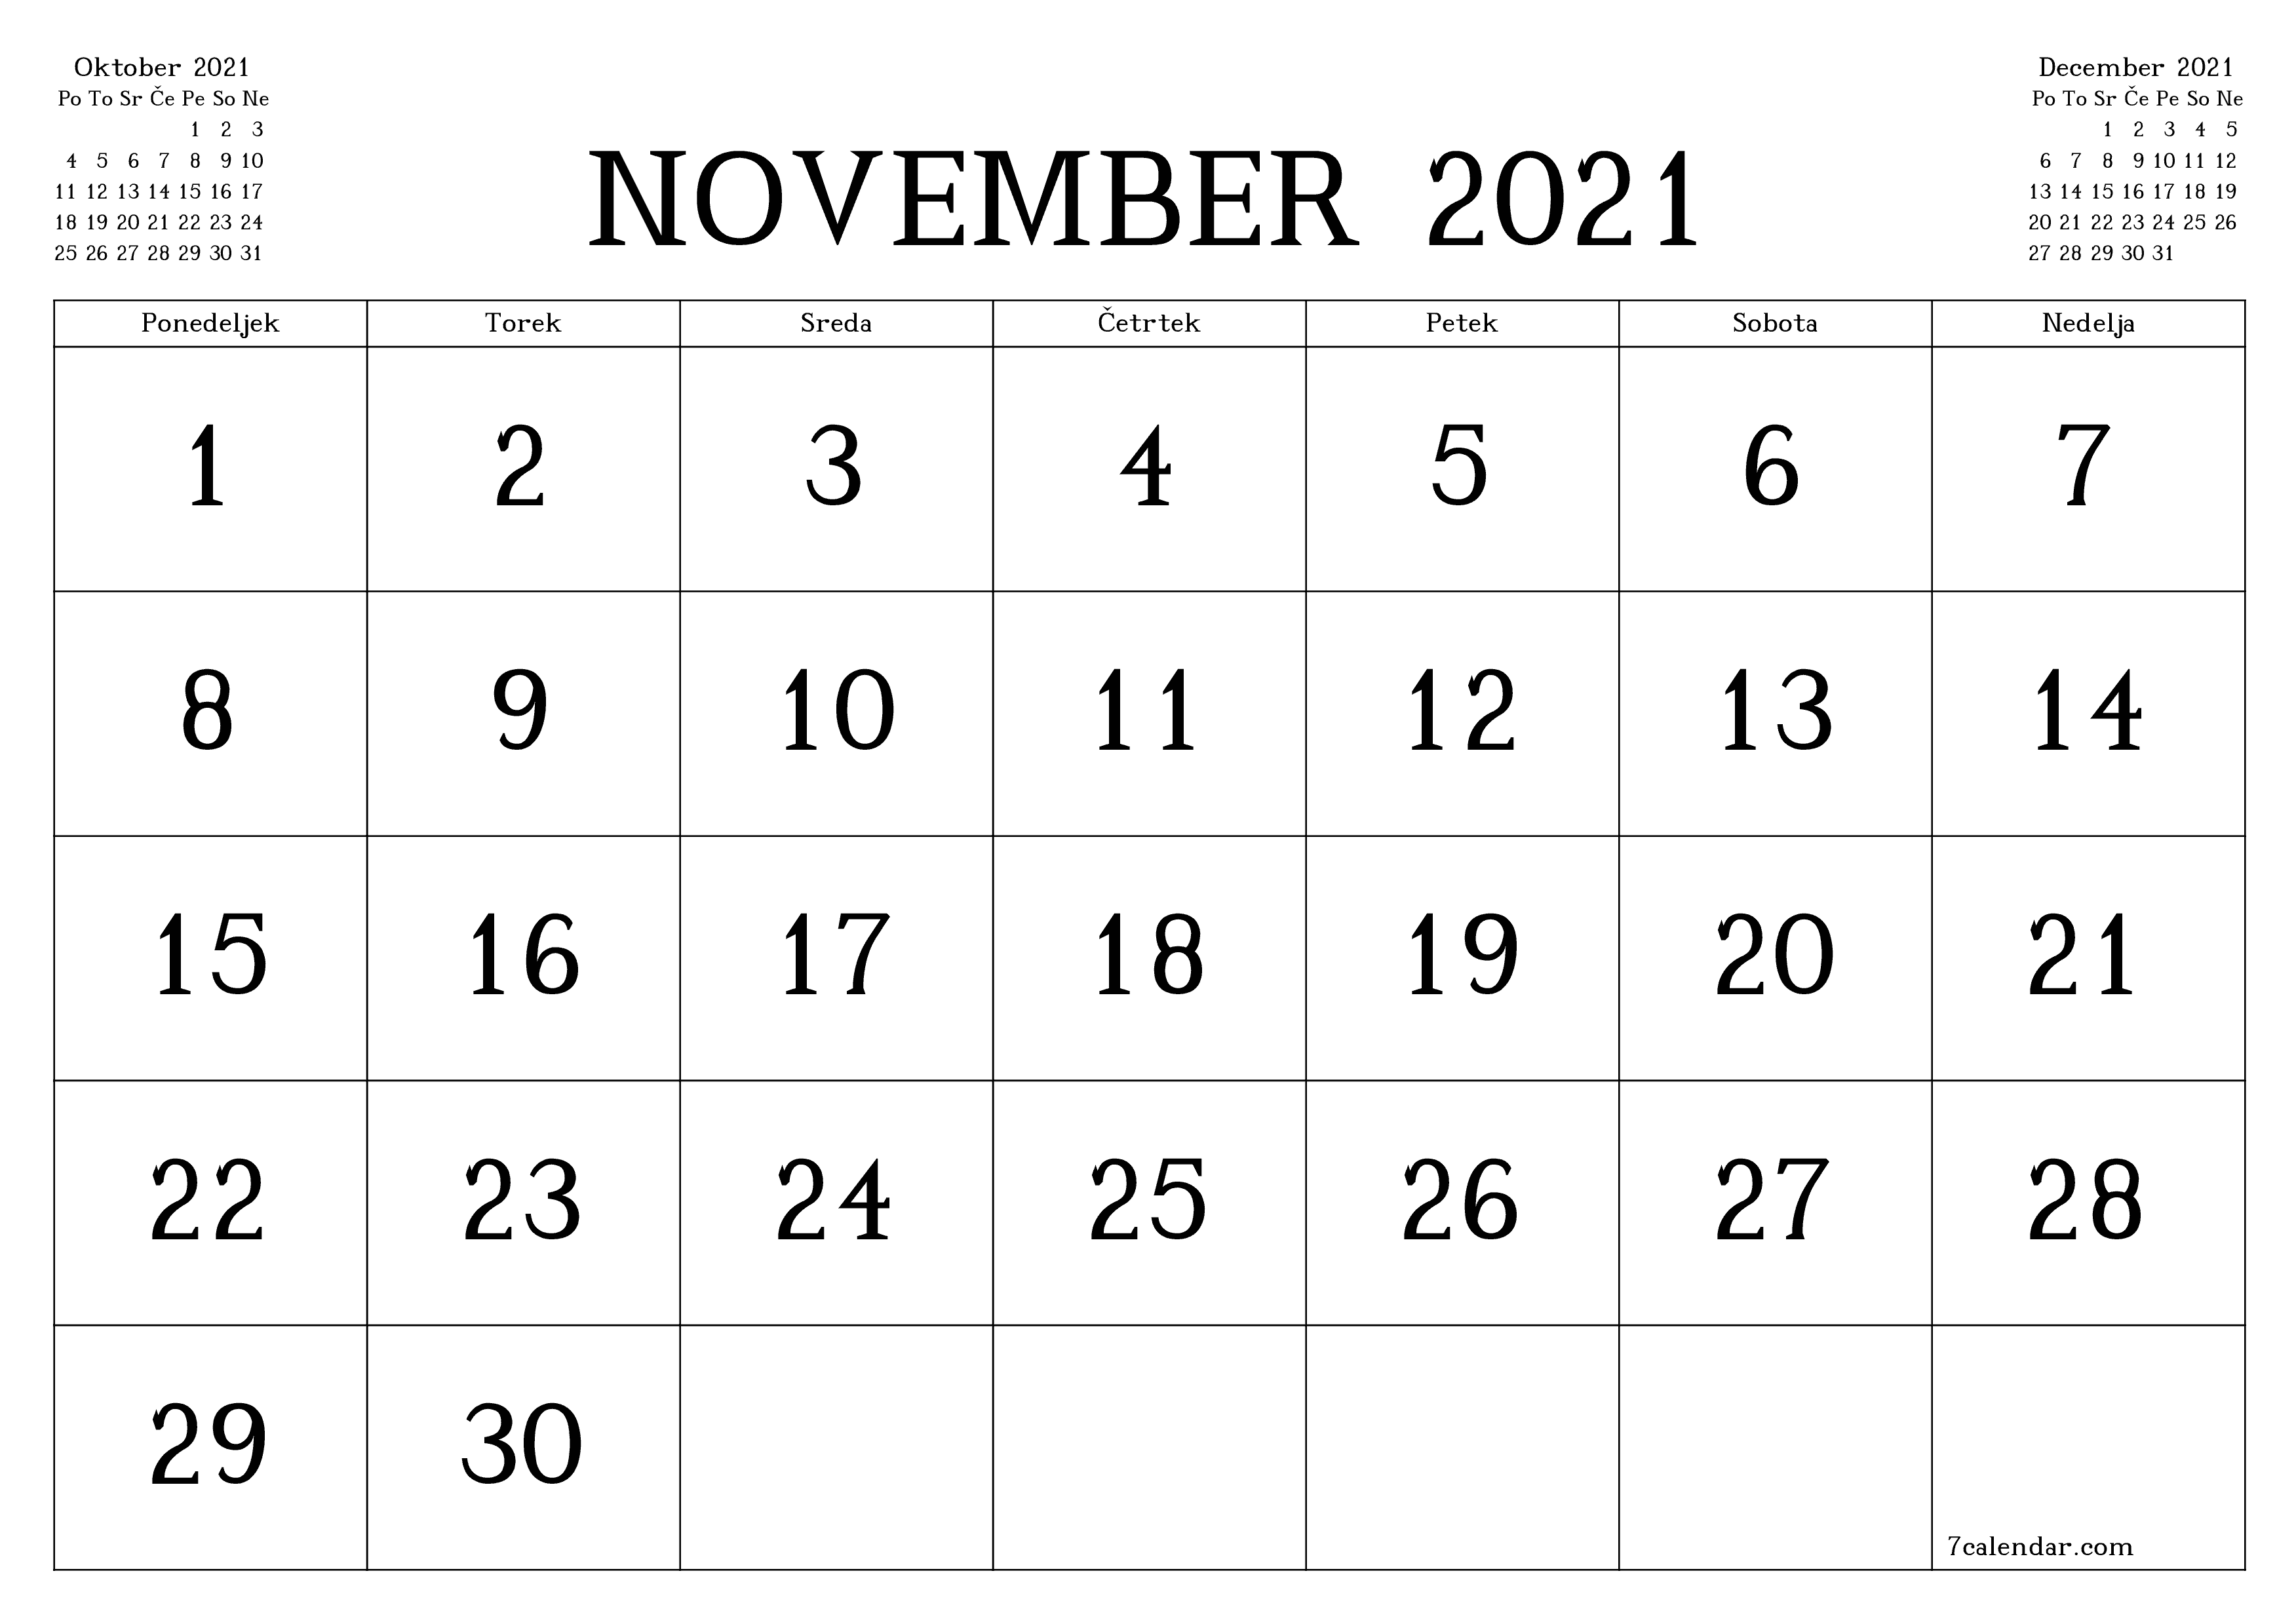 Prazen mesečni načrtovalec koledarja za mesec November 2021 z opombami, natisnjenimi v PDF PNG Slovenian